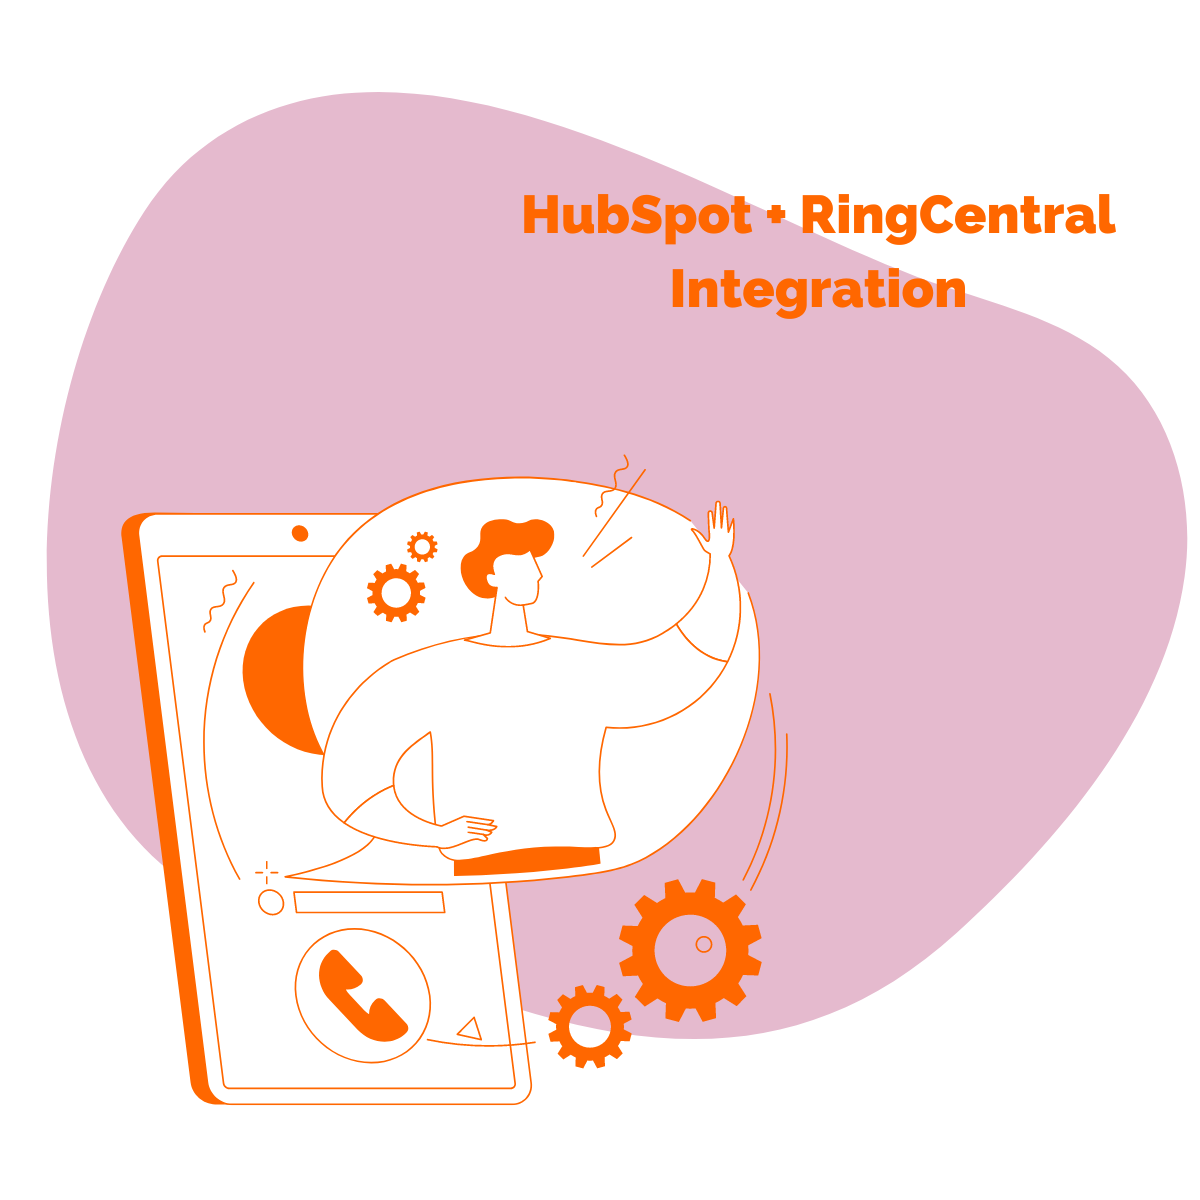 HubSpot RingCentral Integration